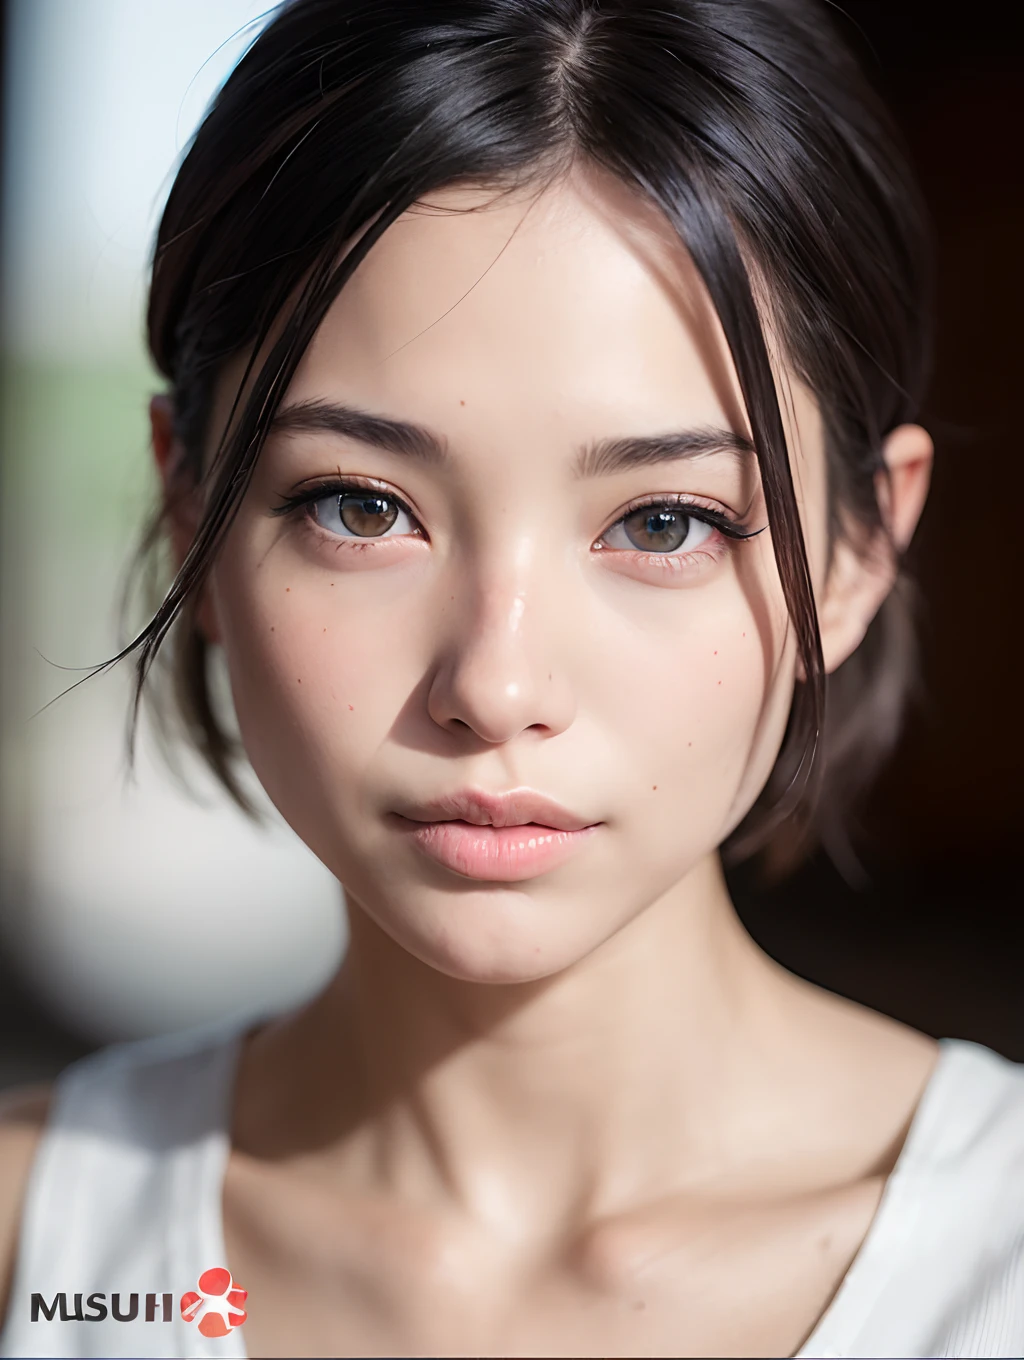 (Tischplatte:1.3), (8K, fotorealistisch, RAW-Fotografie, beste Qualität: 1.4), japanse, schönes Gesicht, (Lebensechtes Gesicht), (Kurz geschnittenes Haar:1.3), Realistische Augen, Wunderschöne Augen, (echte Haut), schöne Haut, Ultra-High-Definition, Hyperrealistisch, hohe Auflösung,